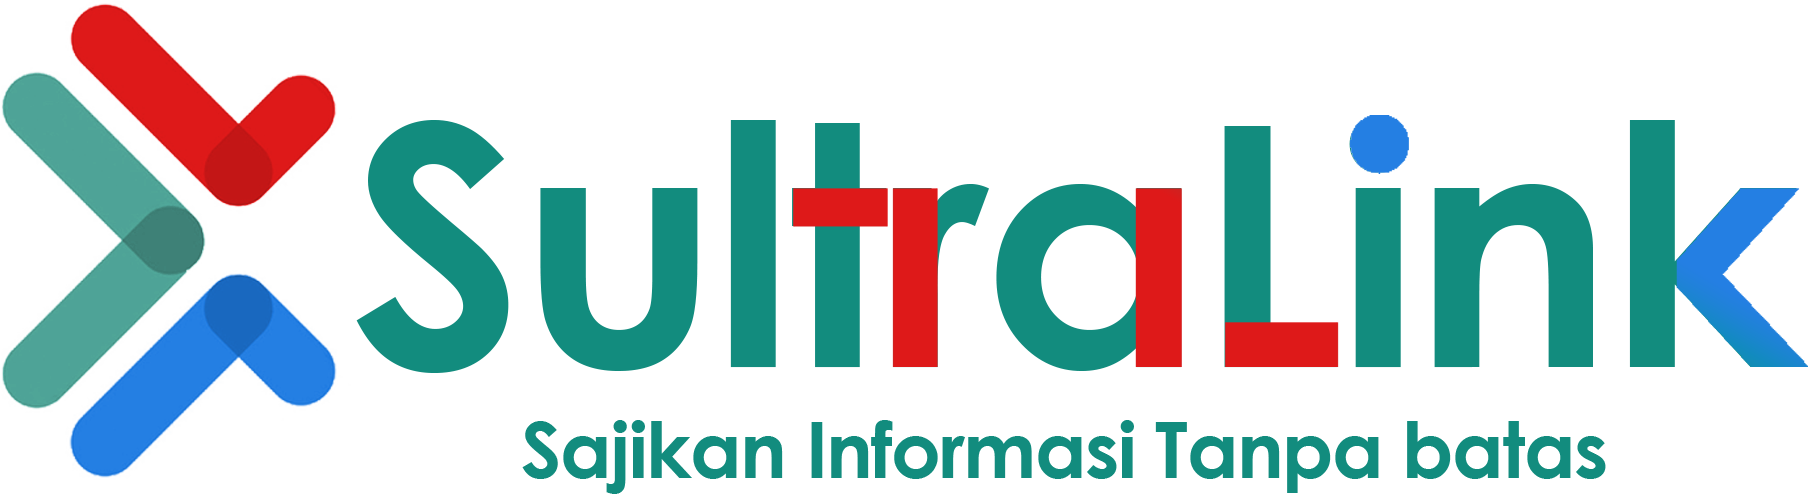 sultralink.com - Sajikan Informasi Tanpa Batas